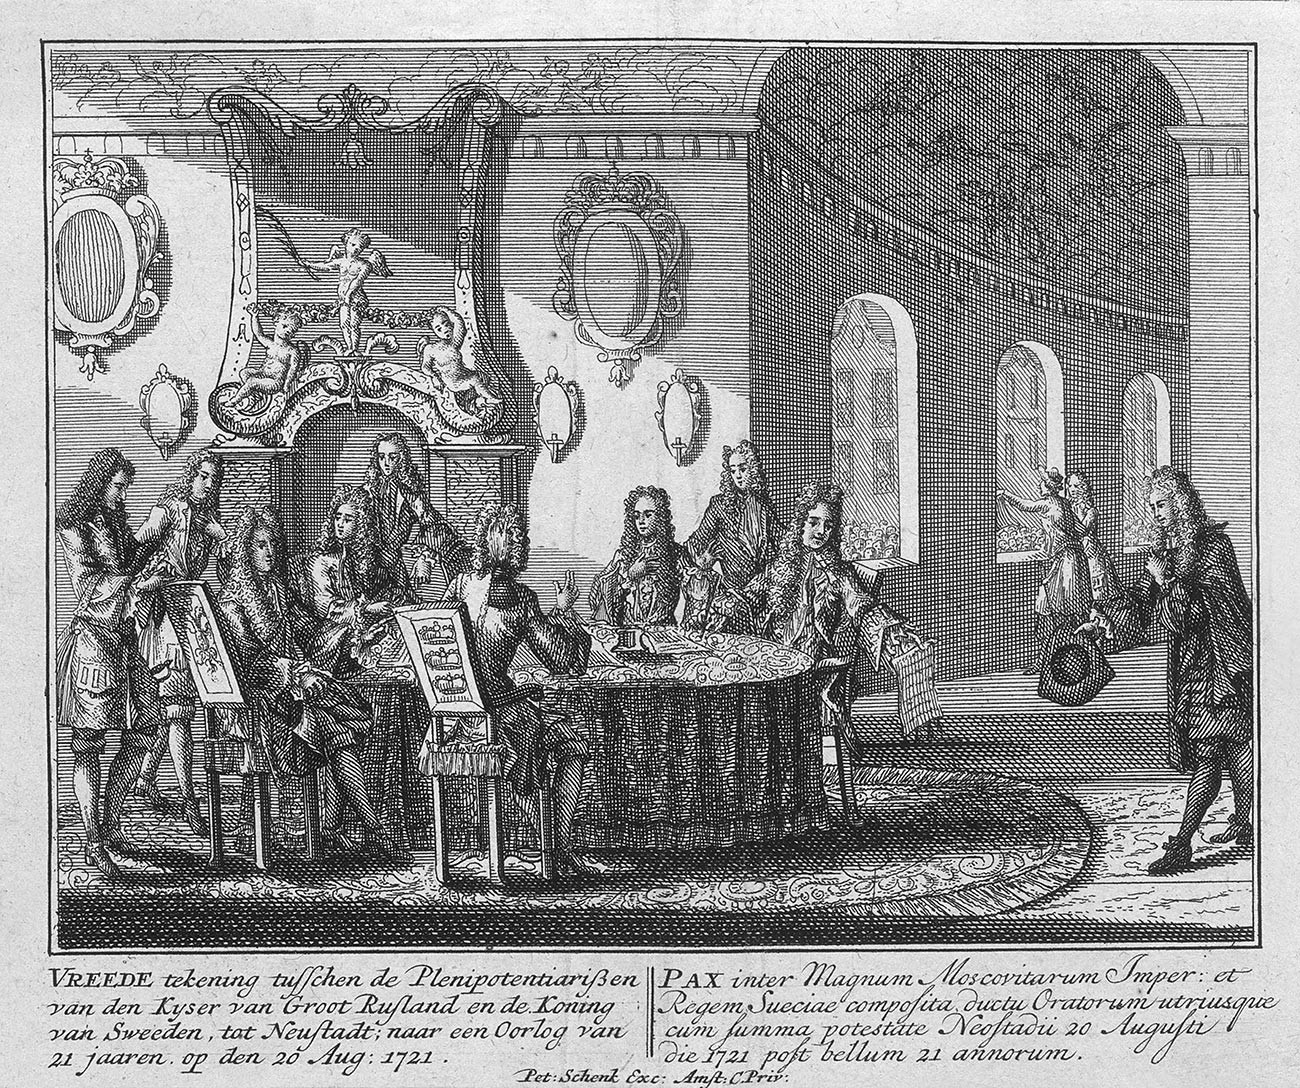 Abschluss des Friedensvertrages von Nystad am 20. August 1721.